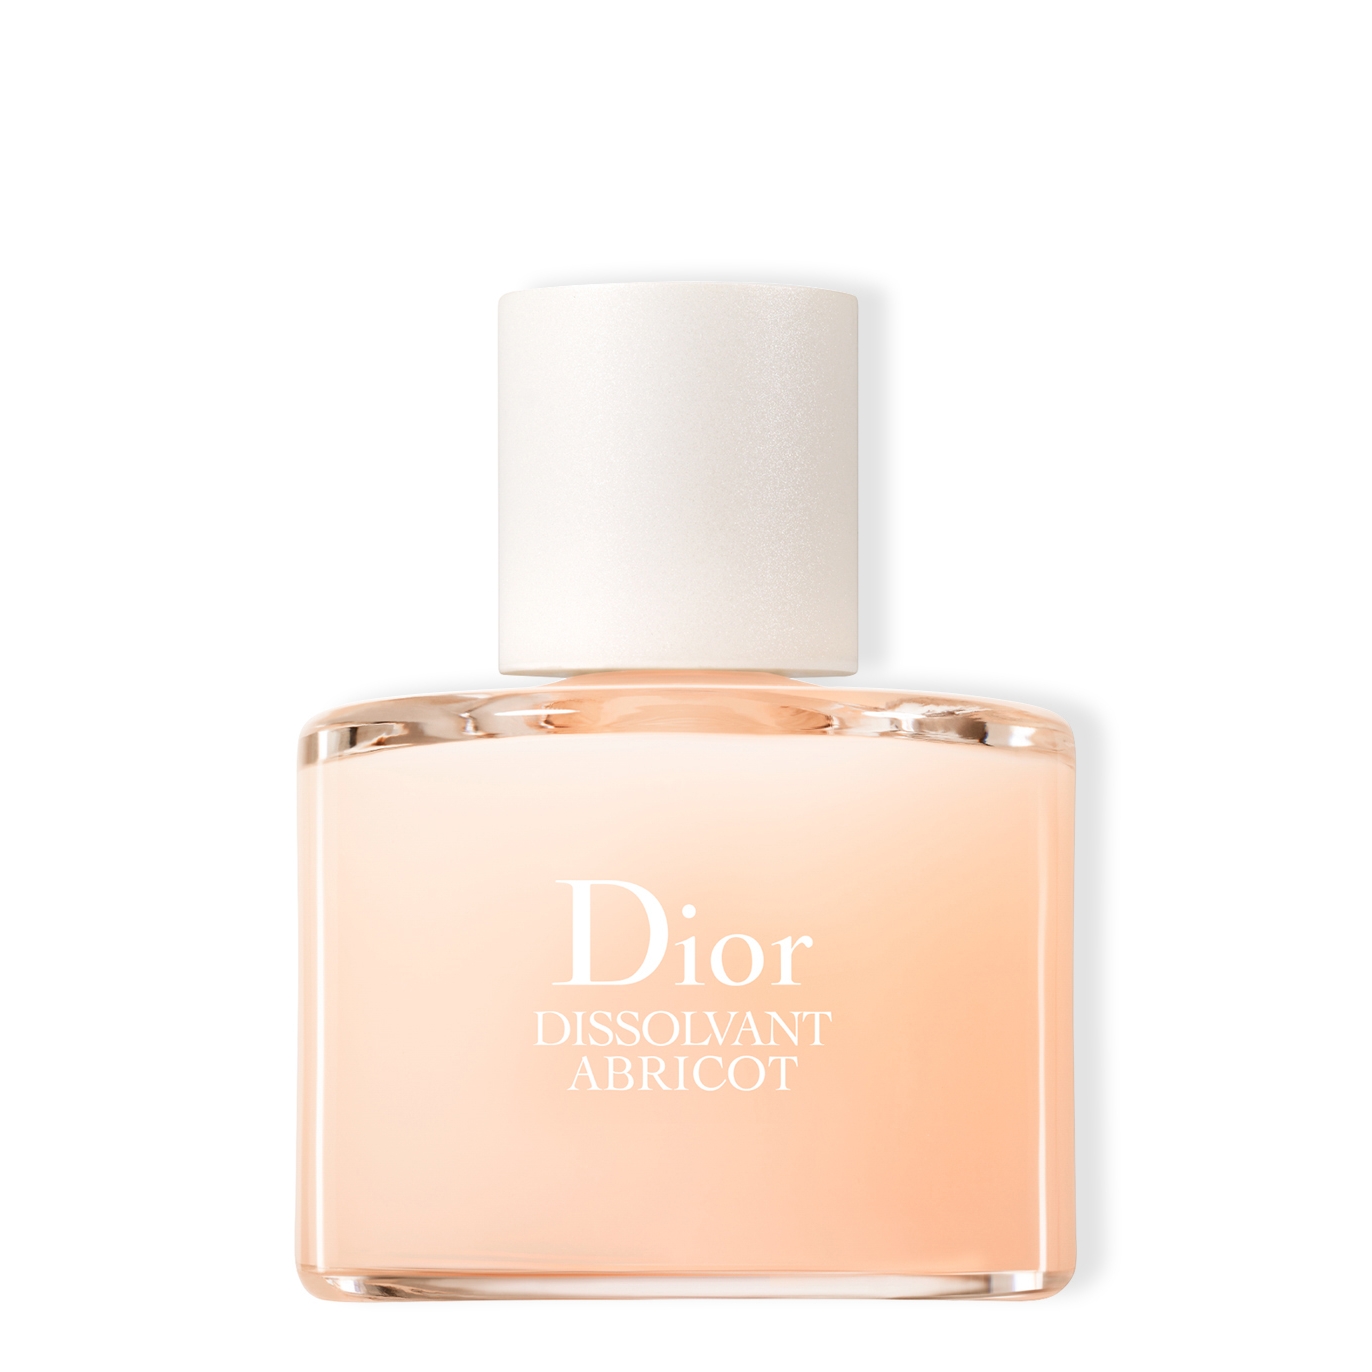 Dior Dissolvant Abricot Nail Polish Remover